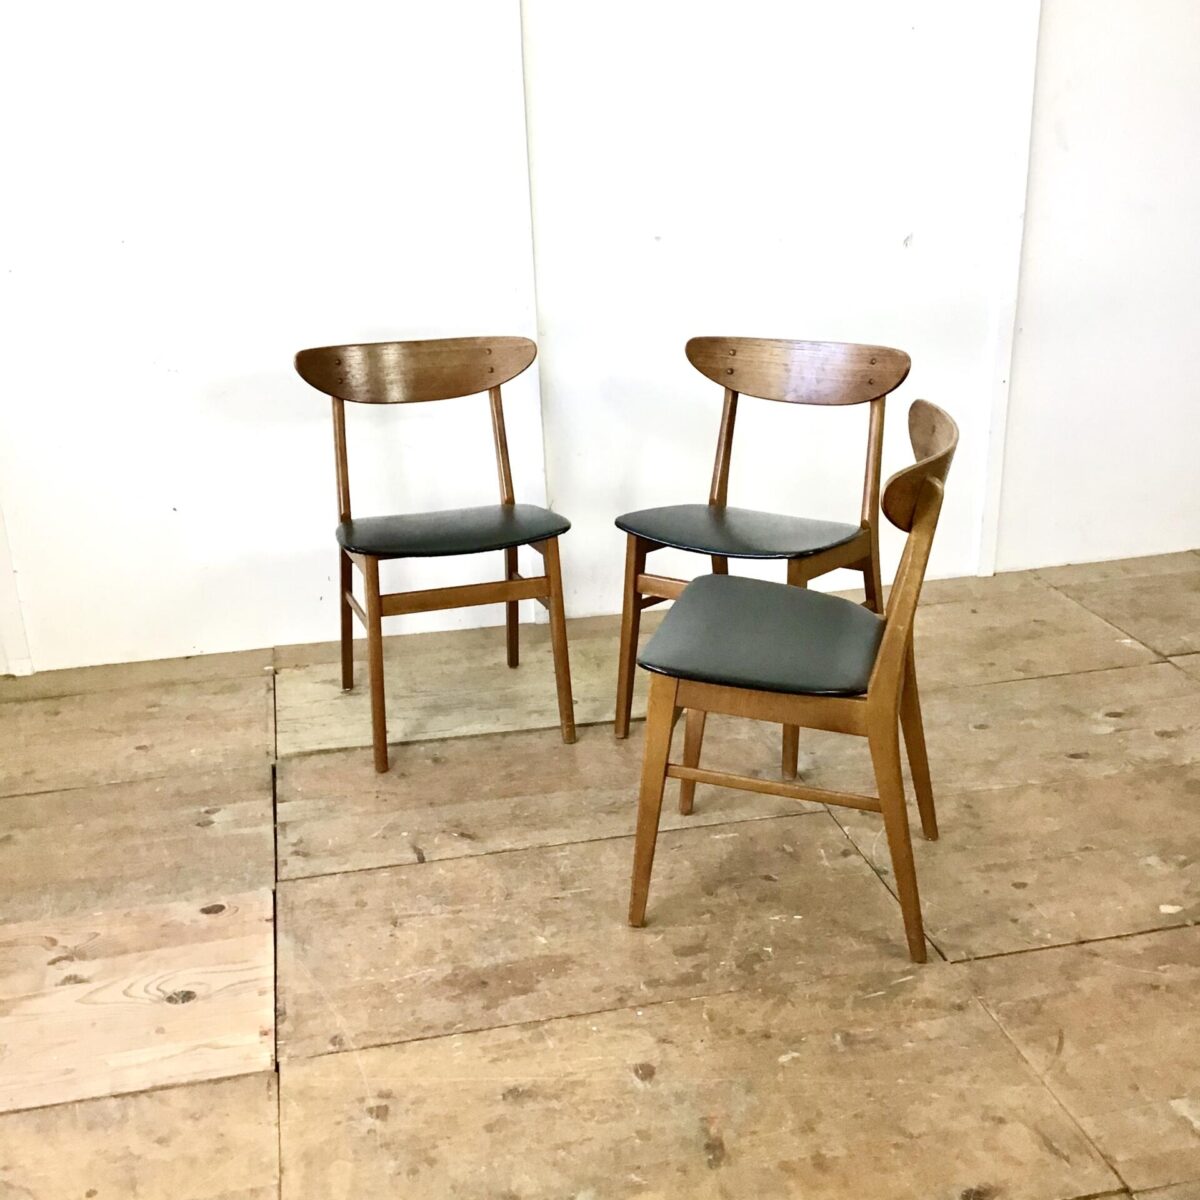 Drei Stühle von Farstrup Denmark. Buchenholz Gestell mit Teak Rückenlehne. Sitzfläche schwarzes Kunstleder. 